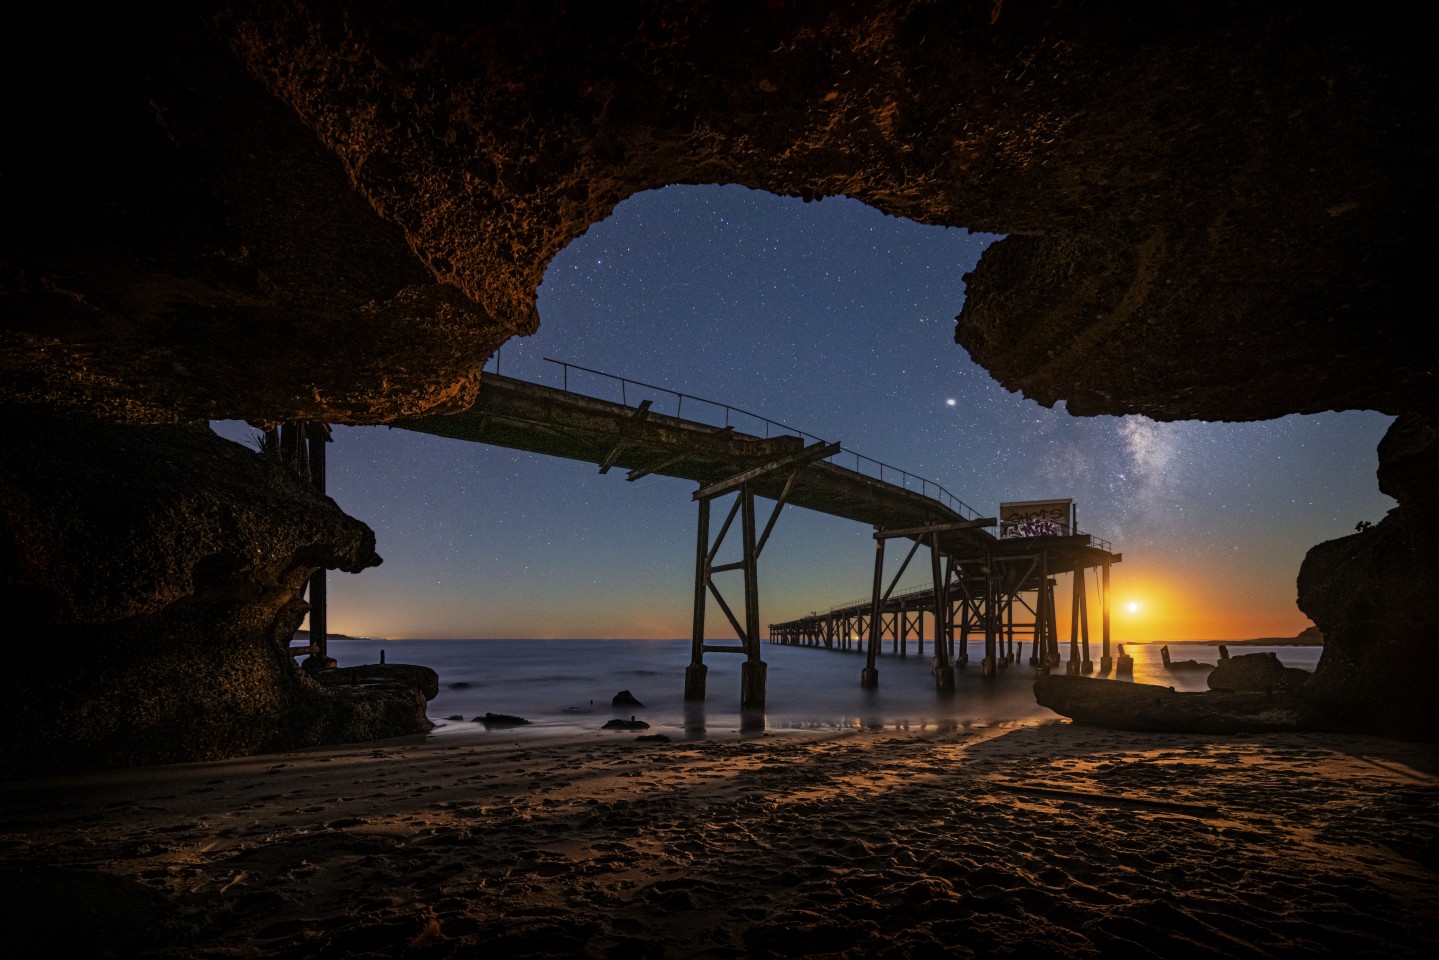 Финалист в категории Астро-фото: "Восход луны в заливе Кэтрин Хилл в Новом Южном Уэльсе, в Австралии". Фото: Tony Law